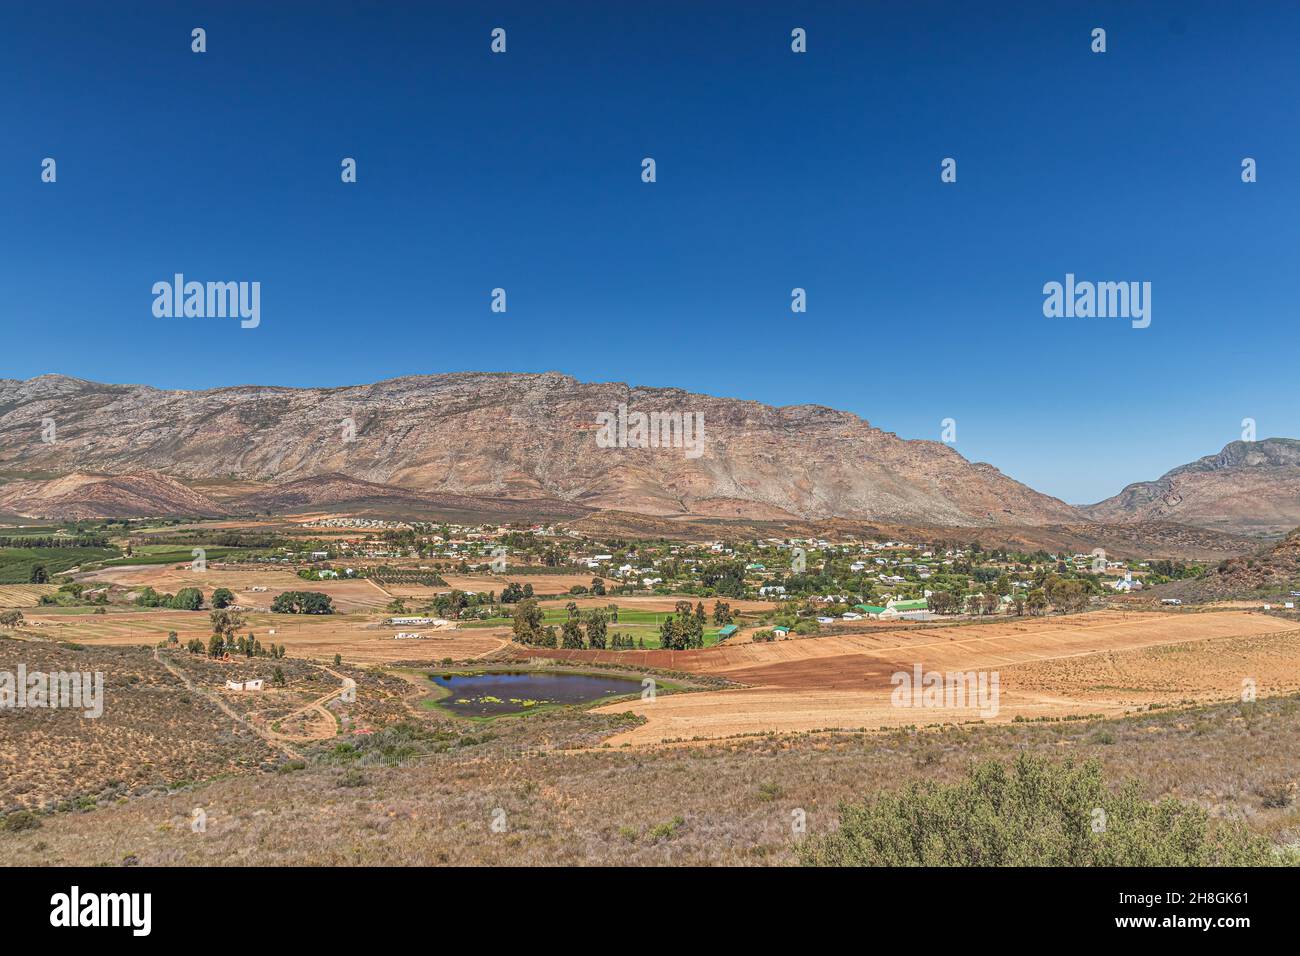 La vista di Barrydale, un villaggio lungo la Route 62 che si trova al confine delle regioni Overberg e Klein Karoo nel Capo Occidentale, Sudafrica. Foto Stock